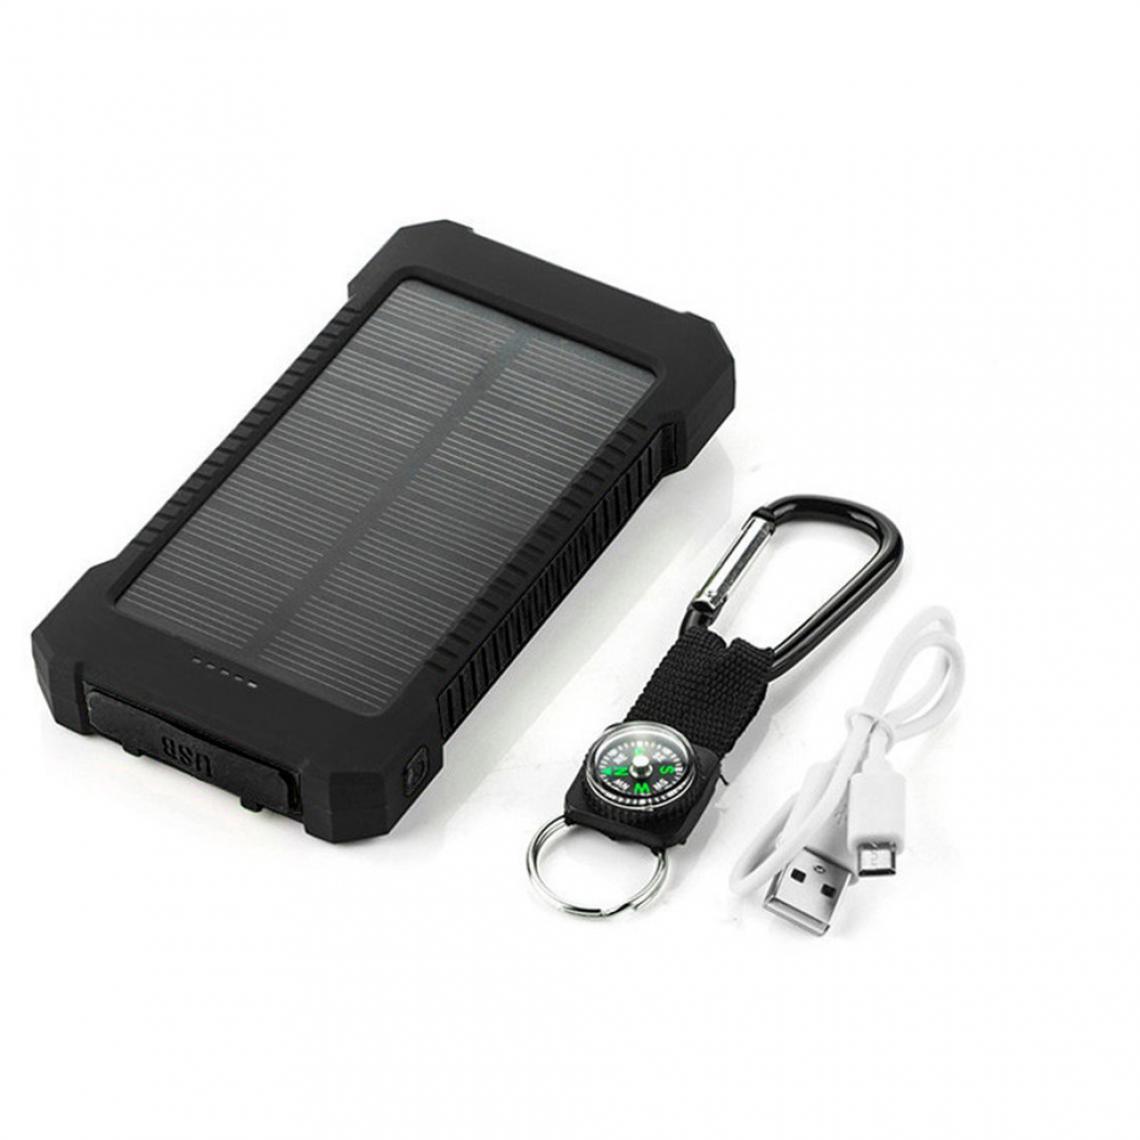 Shot - Batterie Externe Solaire pour OPPO Reno Z Smartphone Tablette Chargeur Power Bank 4000mAh 2 Port USB - Chargeur secteur téléphone